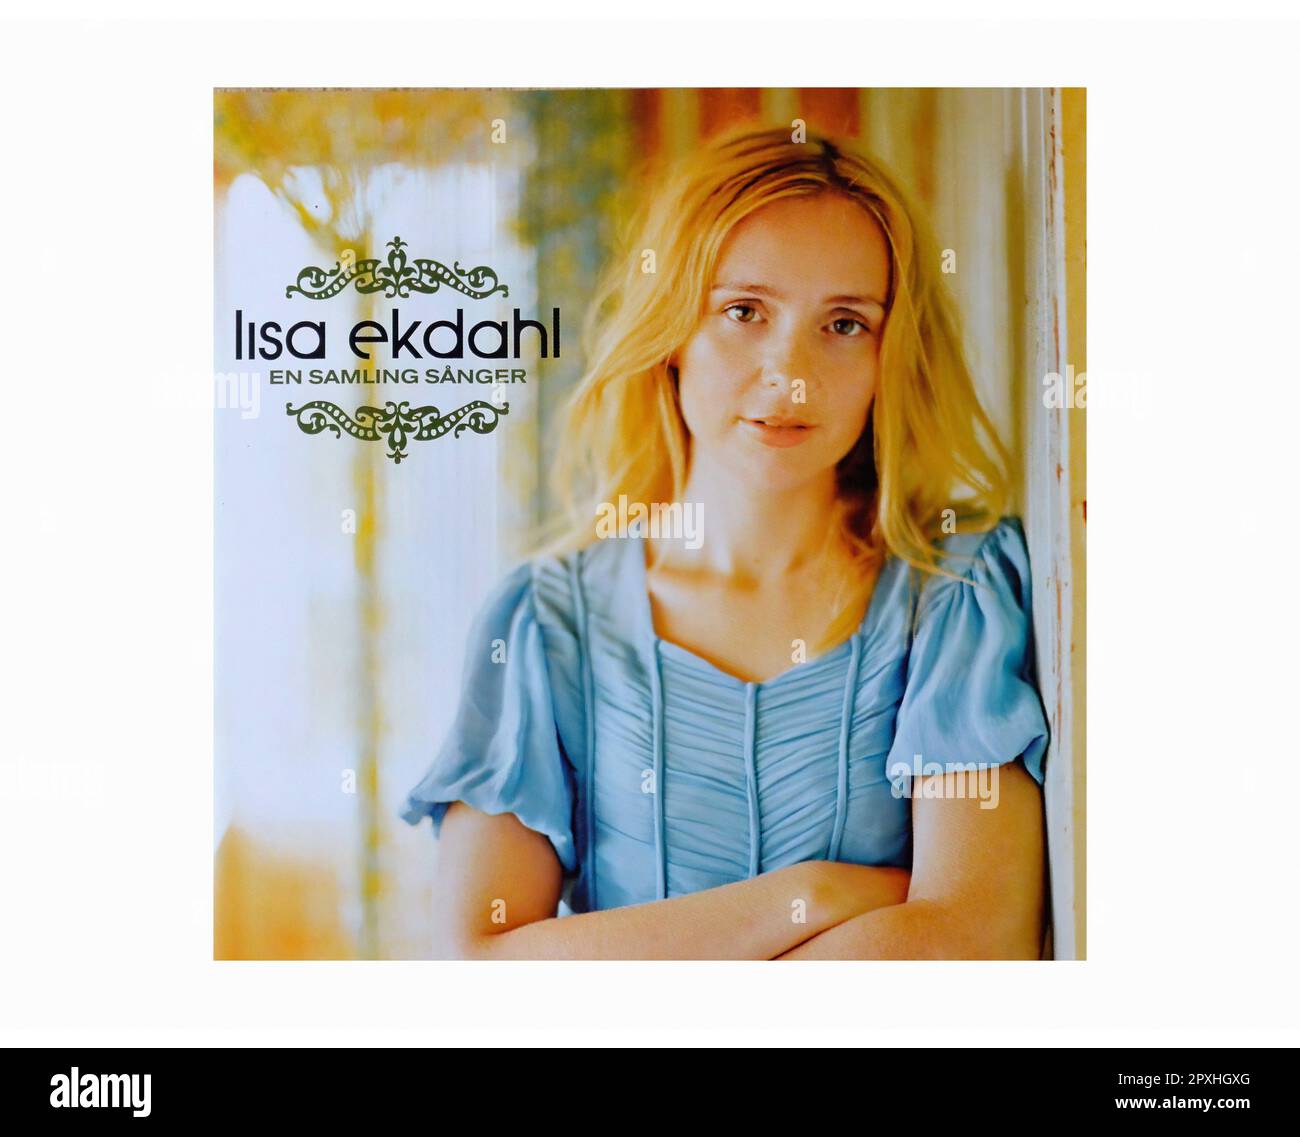 Lisa Ekdahl - En Samling Sänger - Vintage Music Vinyl Record Stock Photo -